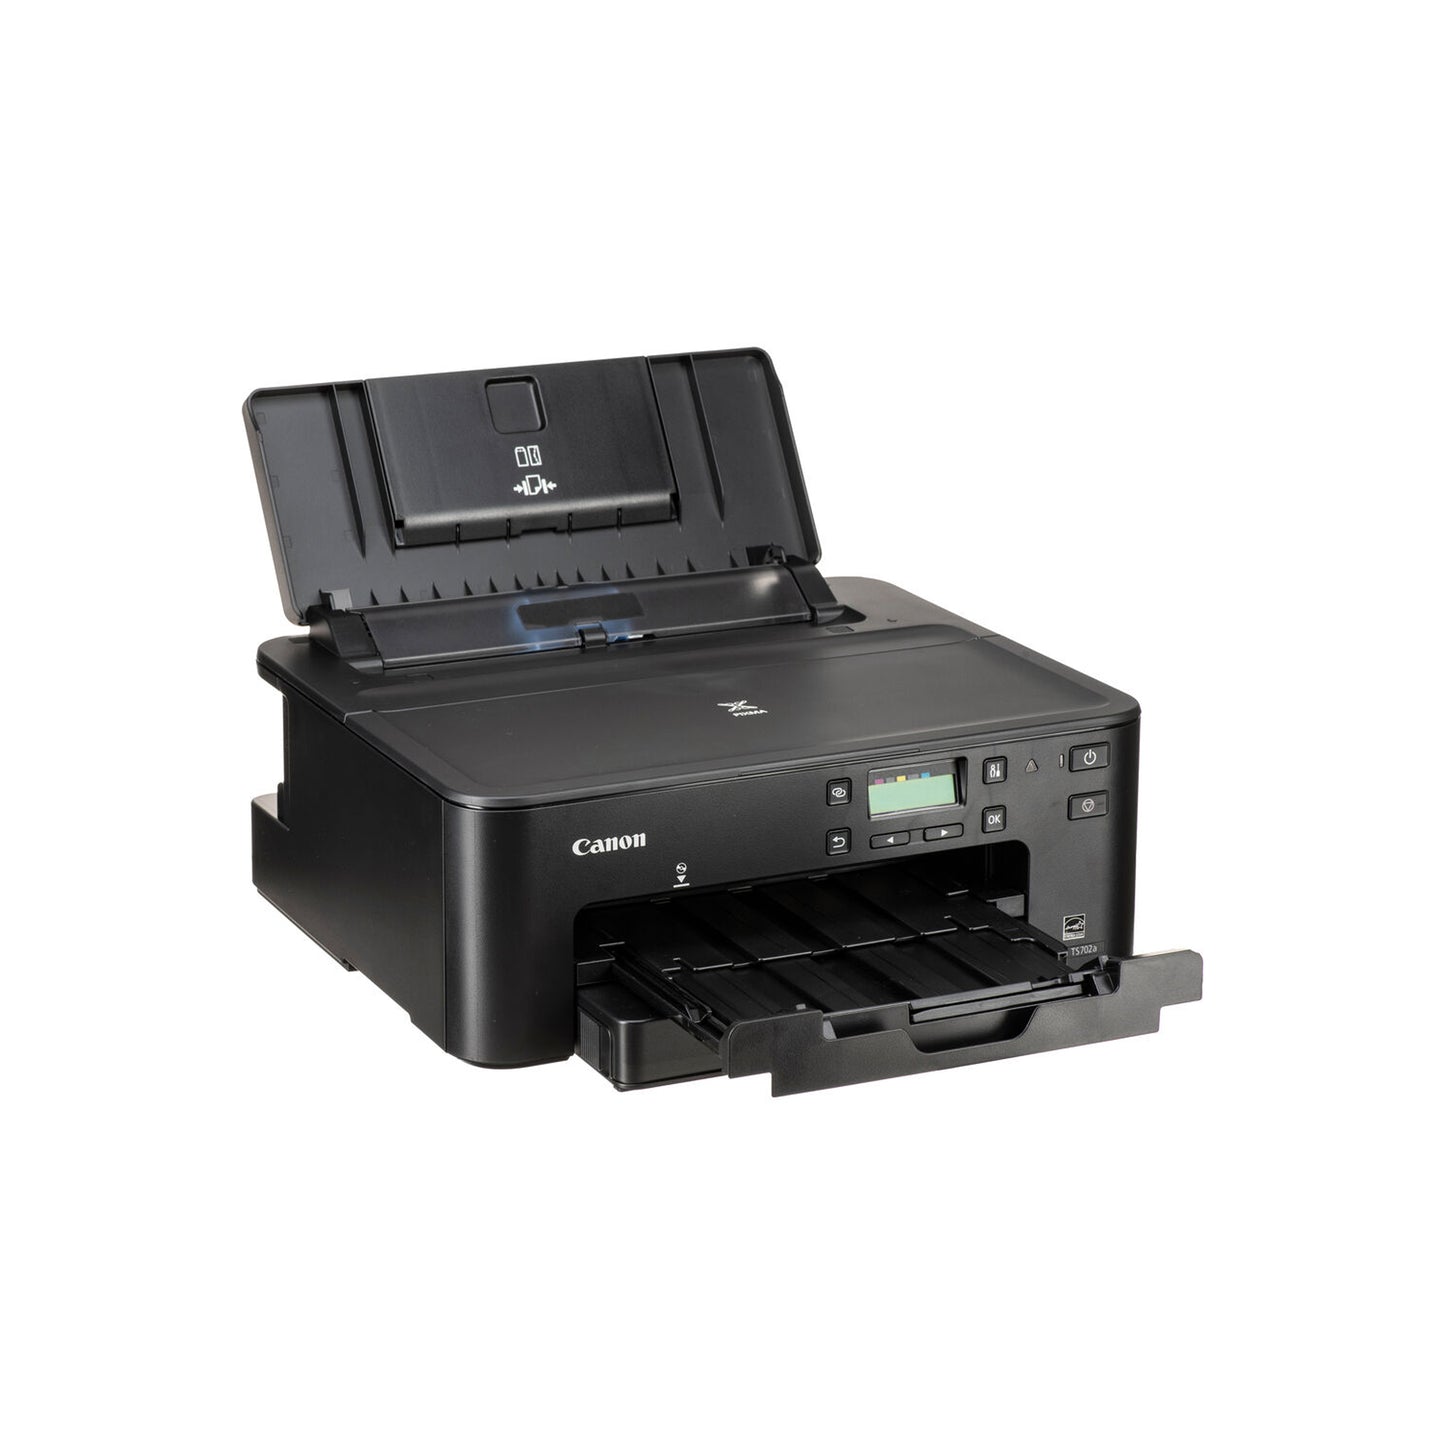 طابعة كانون PIXMA TS702a اللاسلكية ذات الوظيفة الواحدة | الطباعة المحمولة باستخدام AirPrint(R)، والطباعة السحابية من Google، وخدمة الطباعة Mopria(R)، تعمل مع Alexa، أسود، مقاس واحد